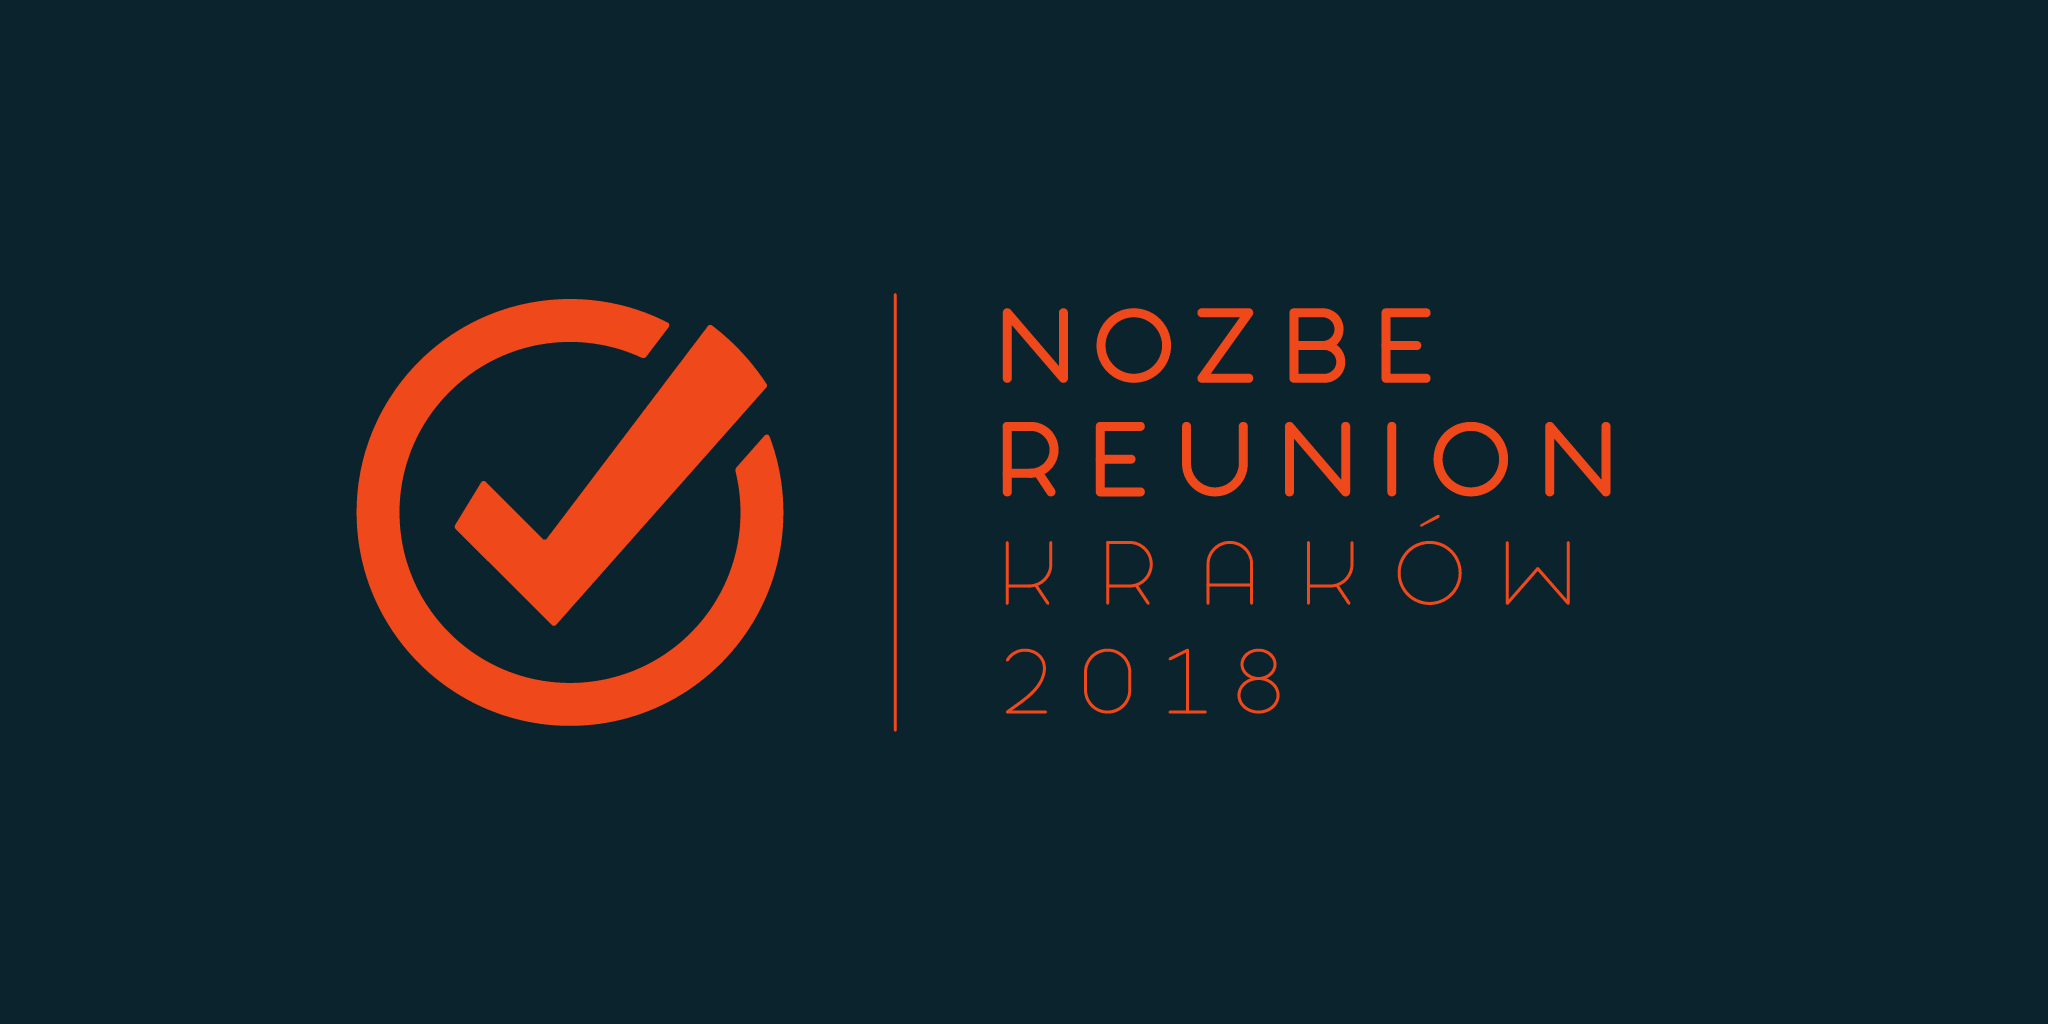 Nozbe Reünie – vertraging klantenondersteuning